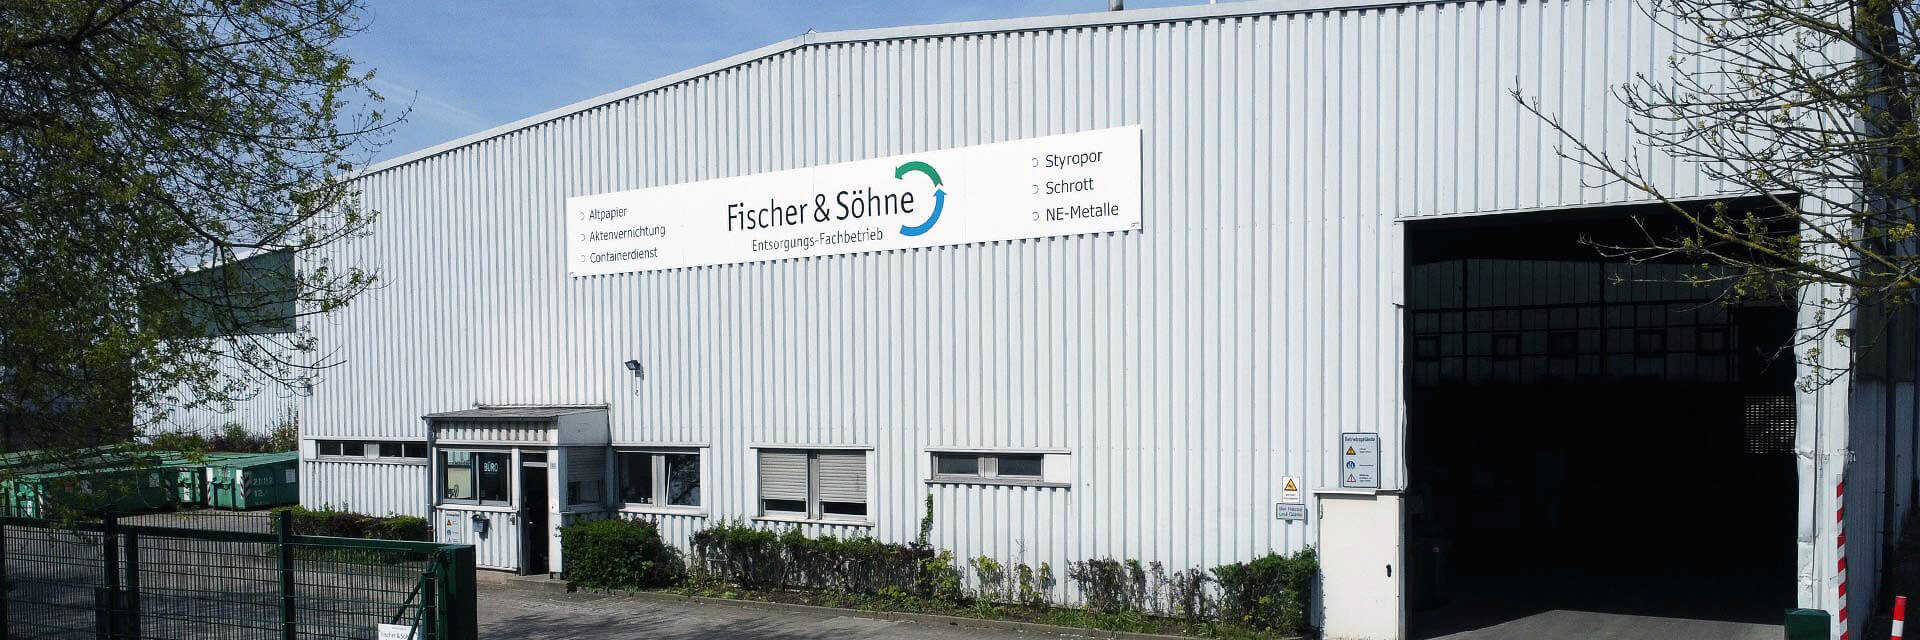 Fischer & Söhne – Entsorgungs-Fachbetrieb in Bochum